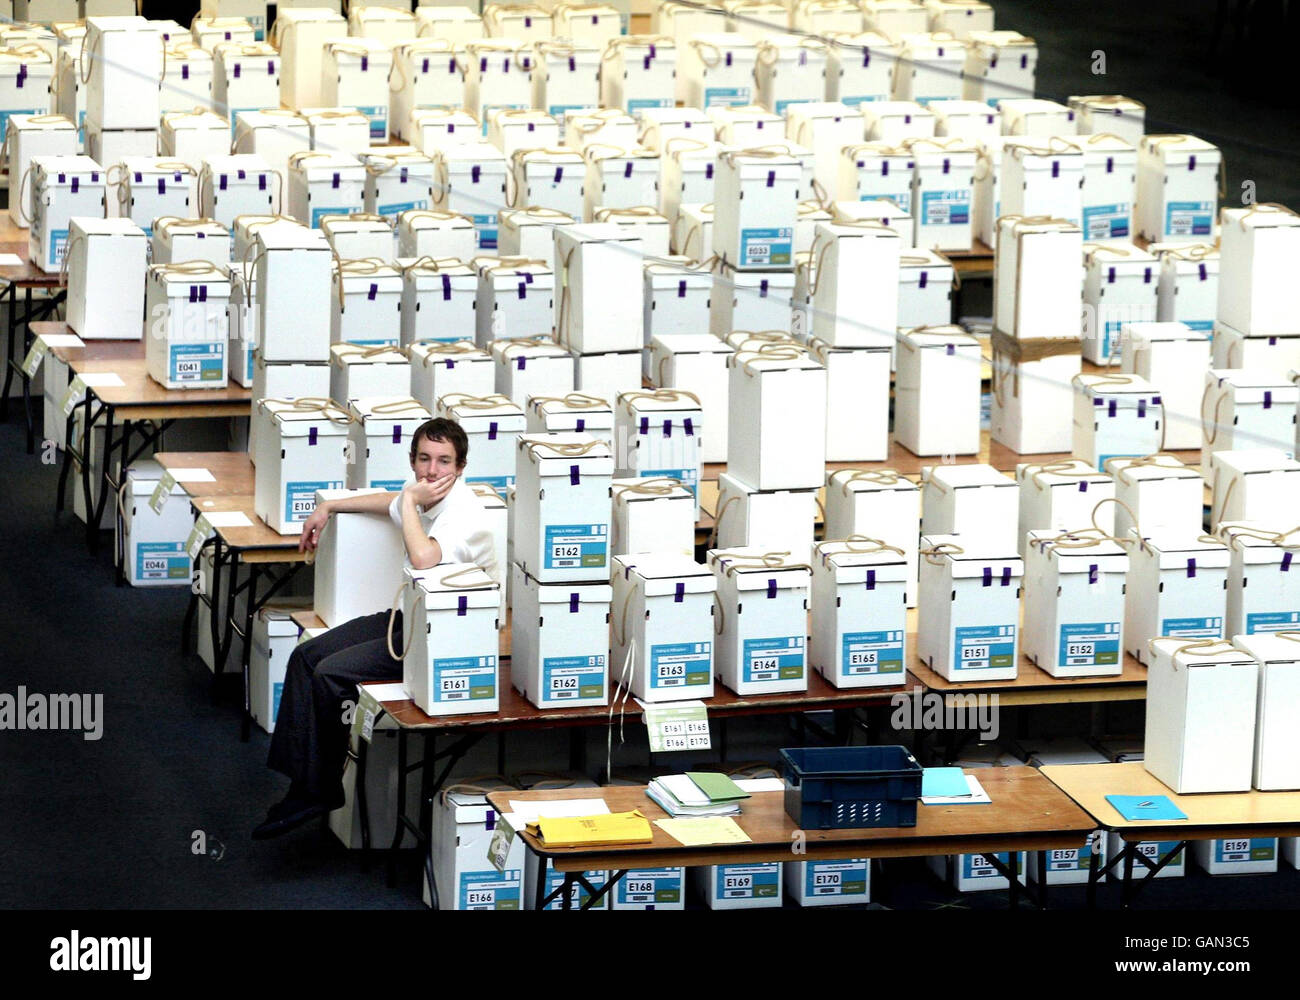 Un opérateur de scanner est assis parmi les urnes du centre de comptage d'Olympia à Londres, où les votes sont comptés électroniquement pour la première fois. Banque D'Images